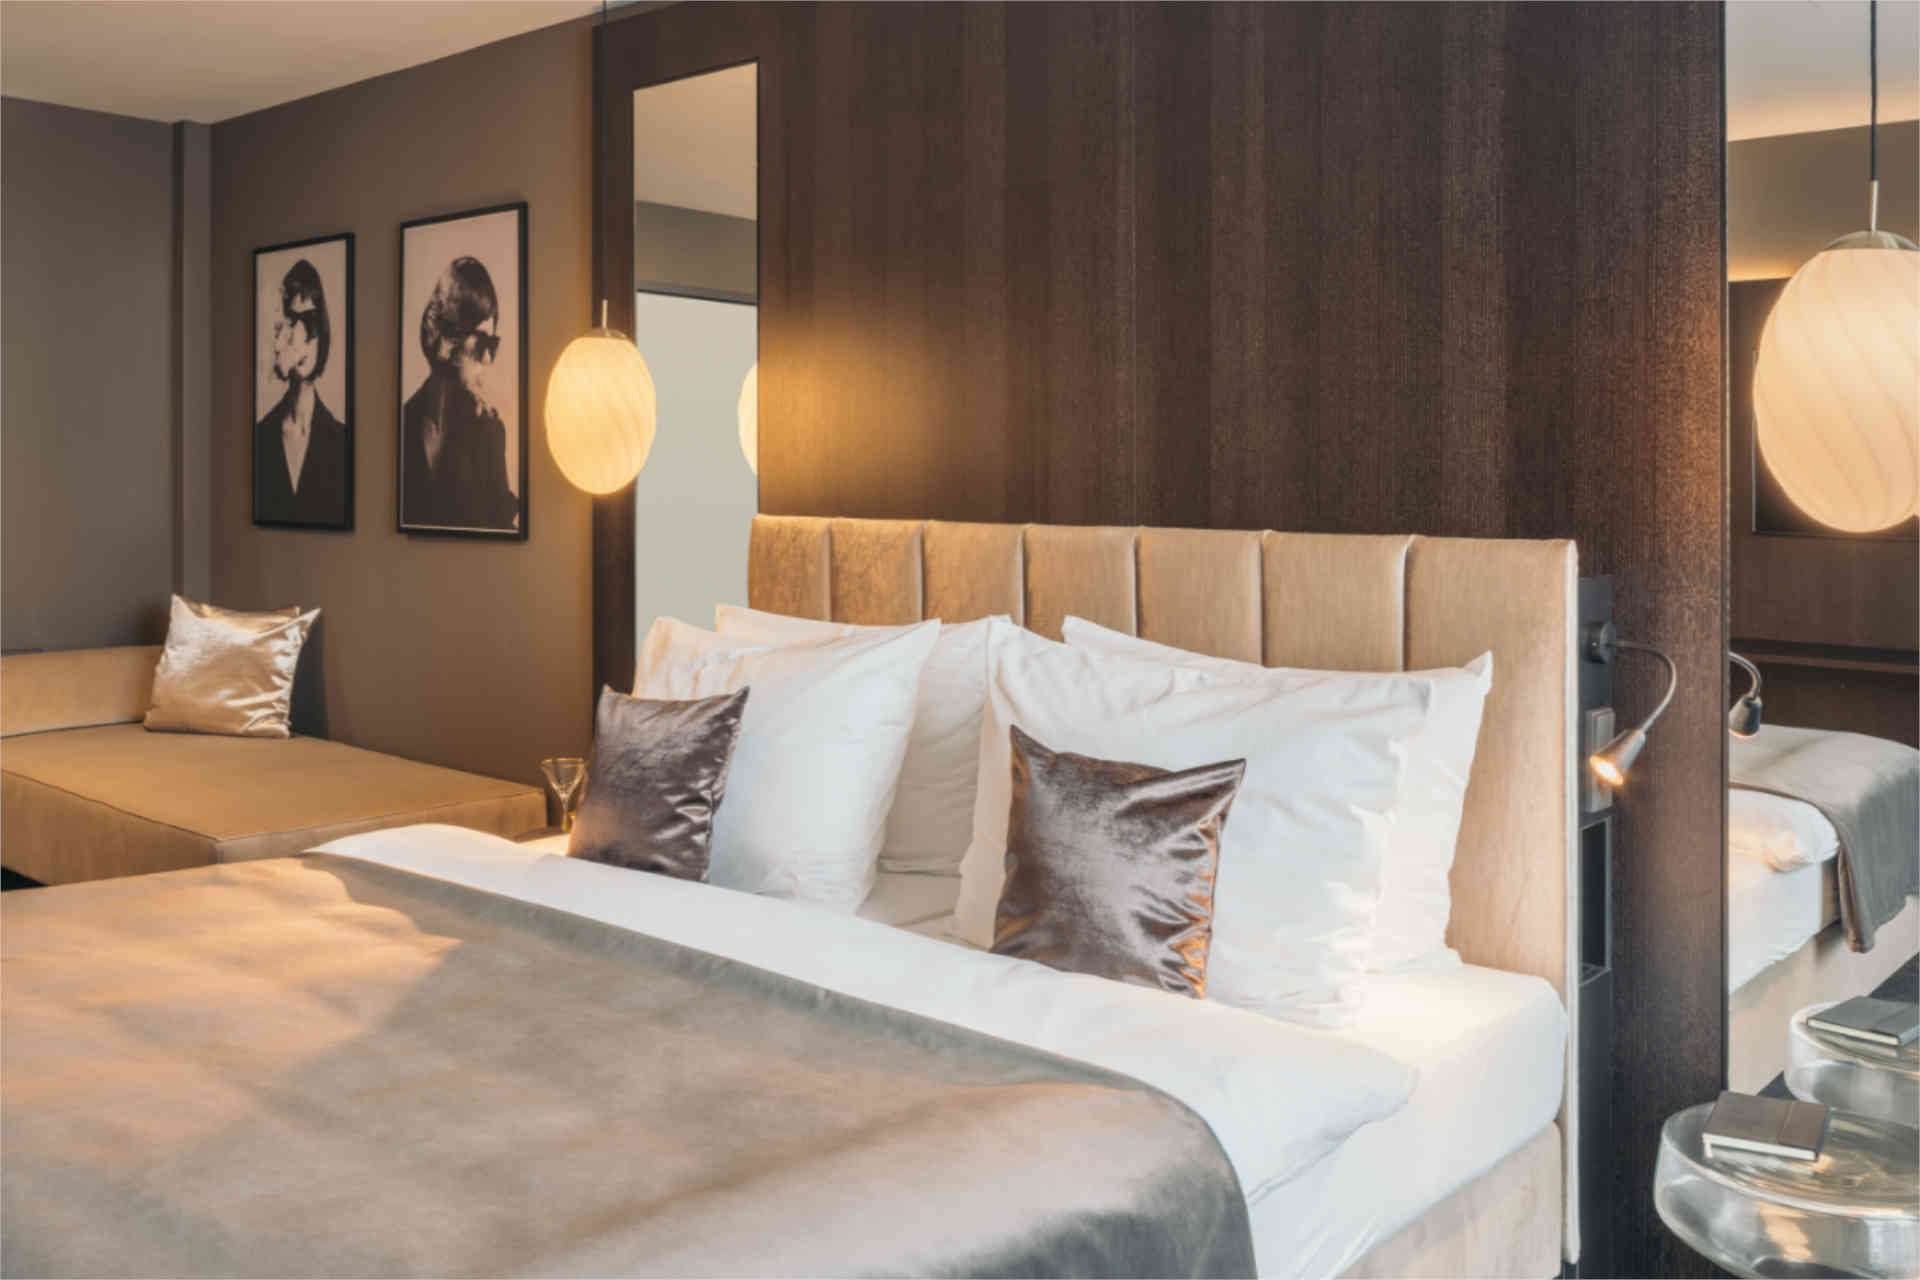 Schuster Hoteleinrichtungen ist bekannt für seine maßgeschneiderten Lösungen, die Luxus und Komfort in Hotelzimmer bringen. © Schuster Hoteleinrichtungen